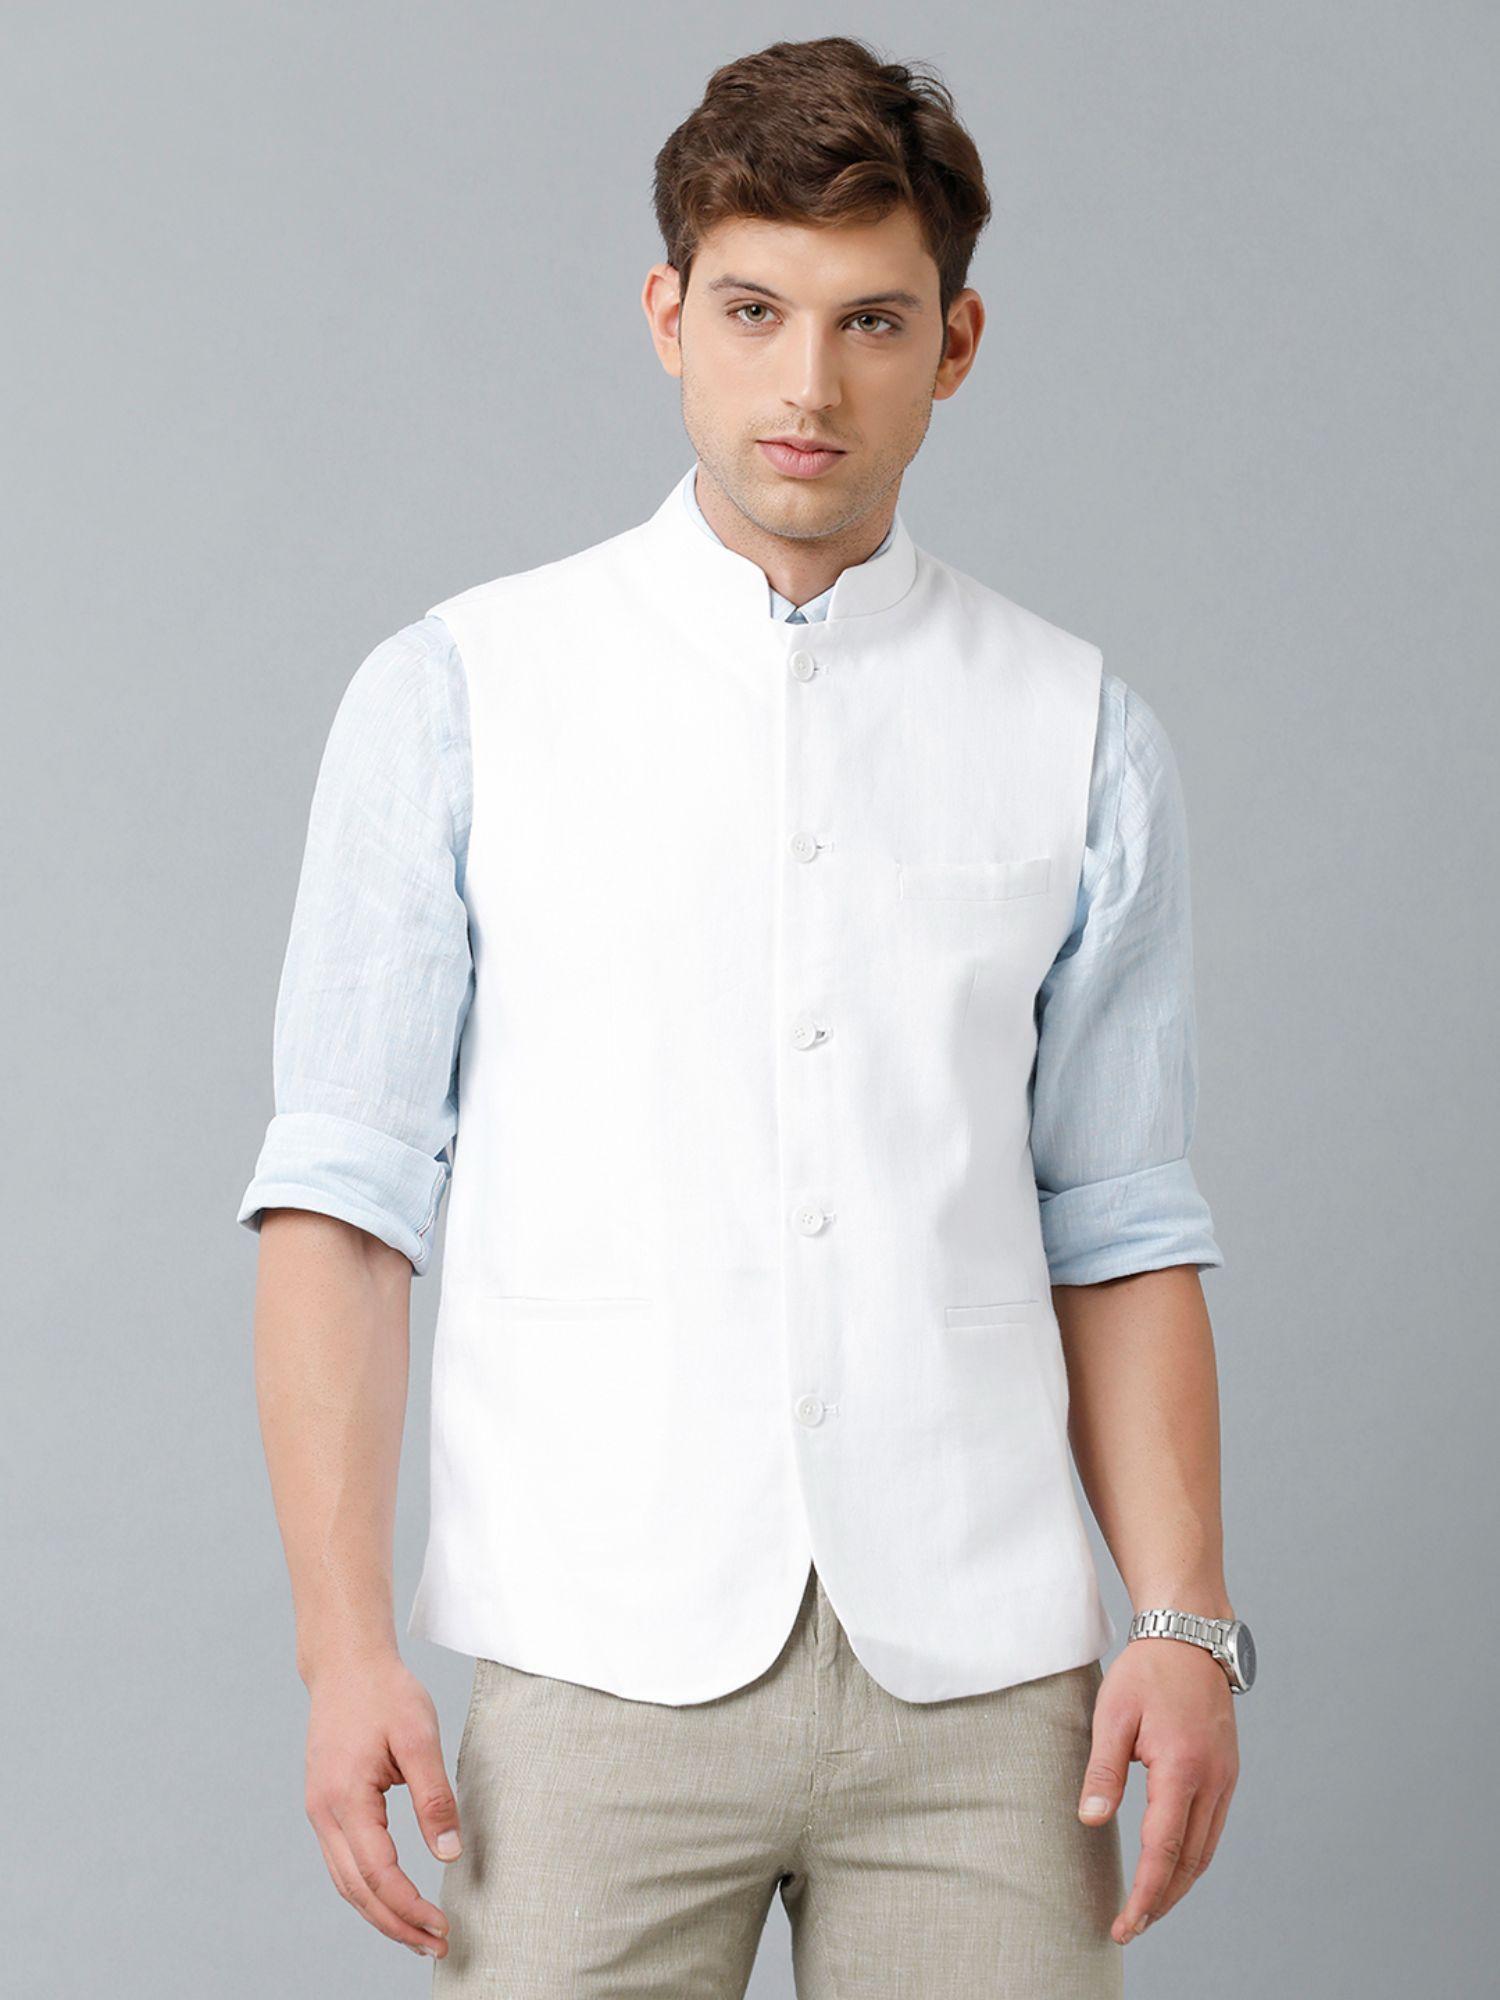 men's-pure-linen-white-solid-nehru-jacket